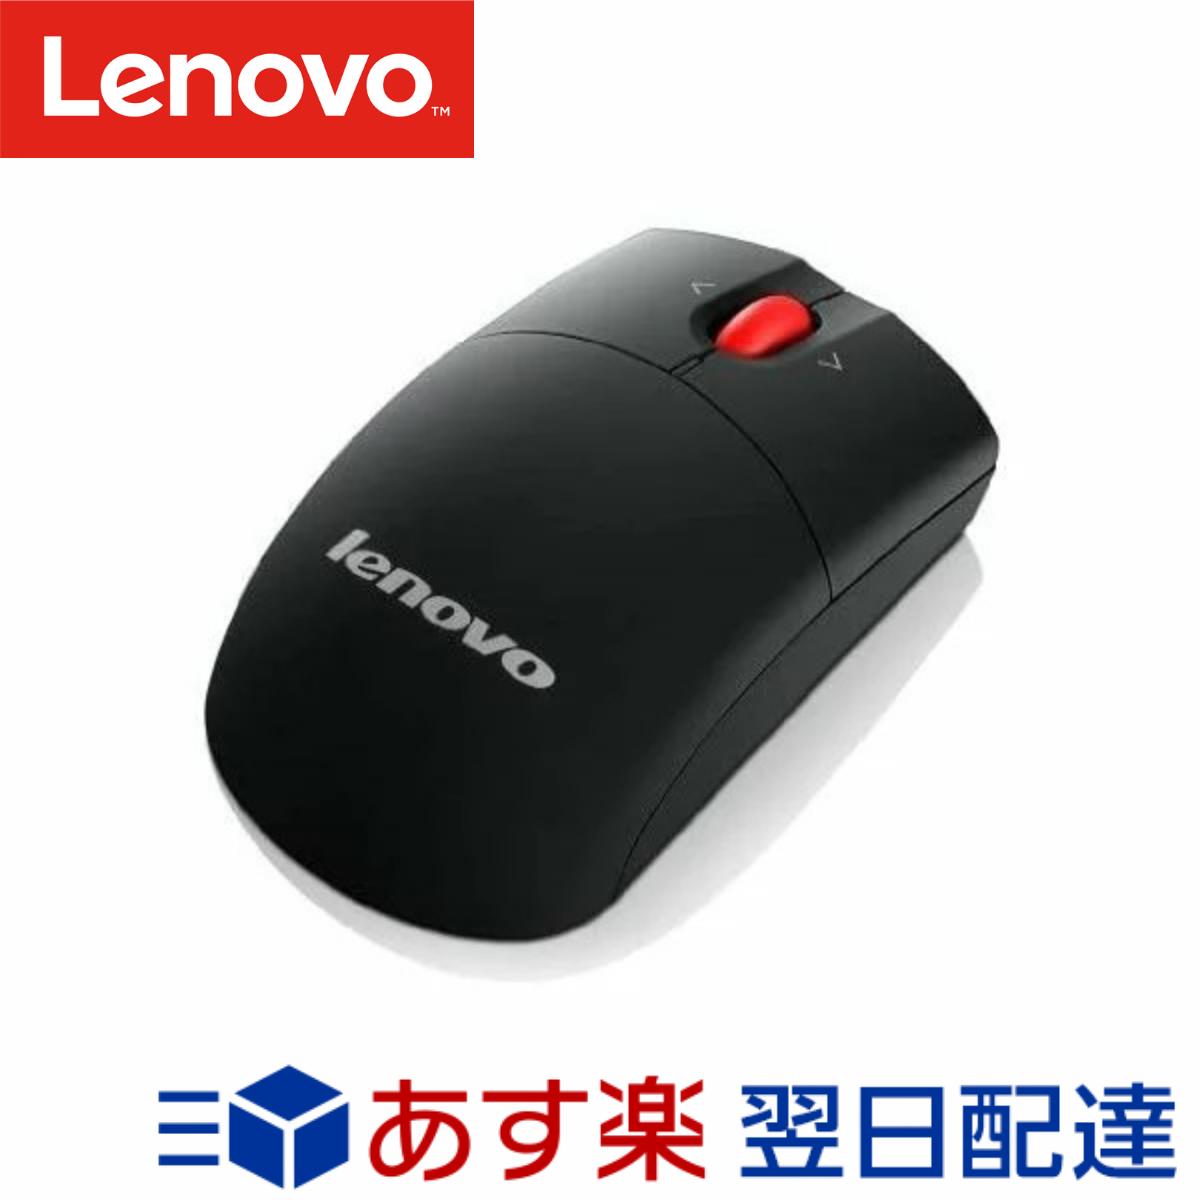 【メーカー純正品 1年保証】 Lenovo レノボ ワイヤレス レーザーマウス 0A36188